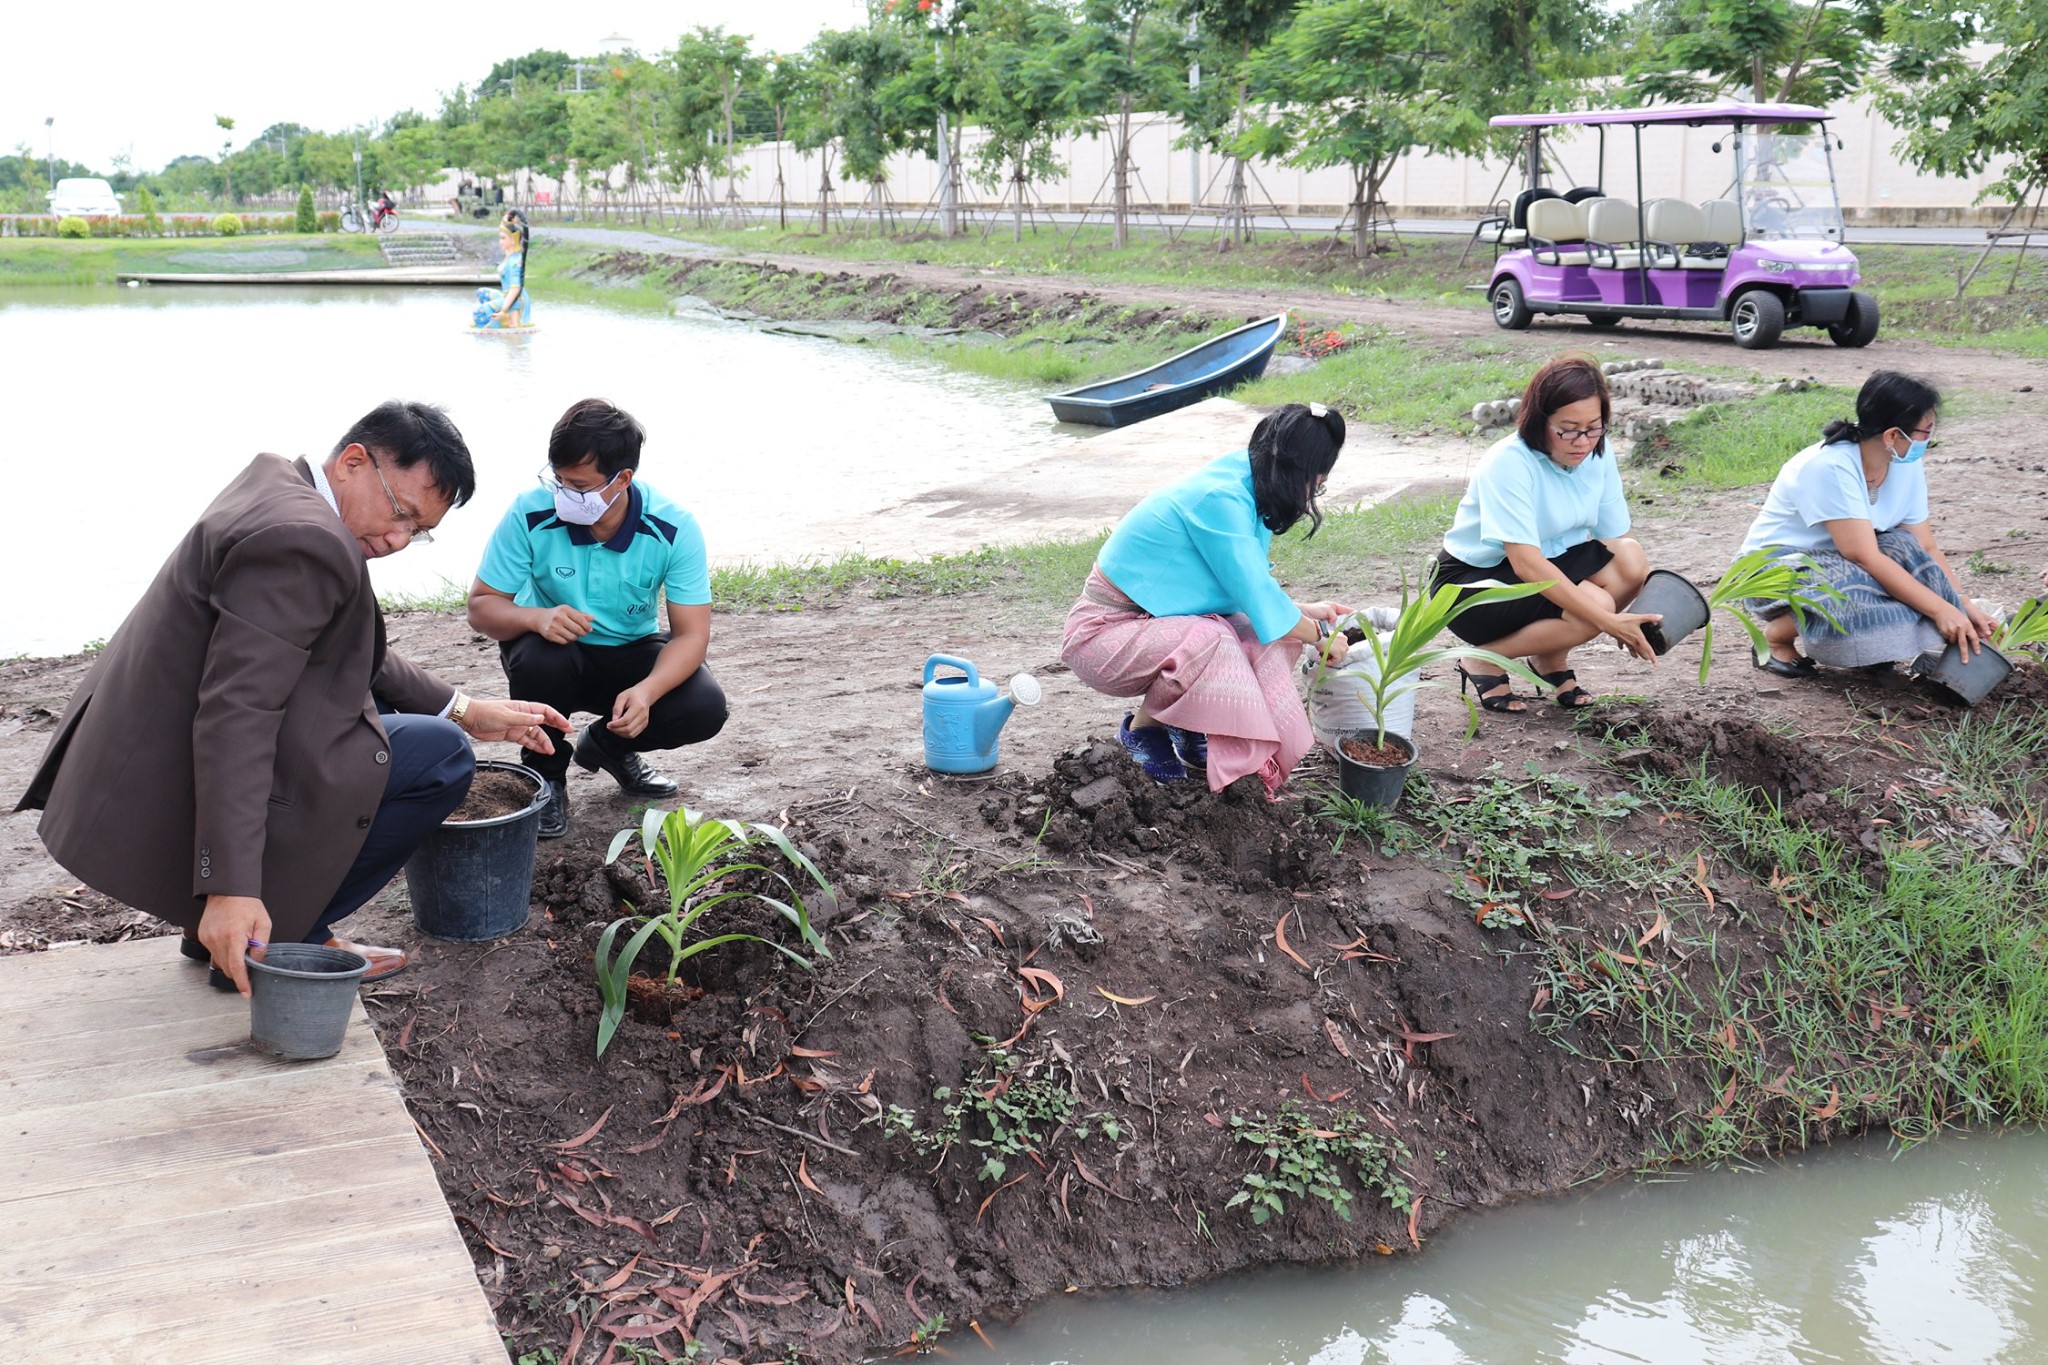 5 สิงหาคม 2563 กิจกรรมปลูกพืชไร่สวน ณ ฐานอุทกธารอาหารเพื่อชุมชน